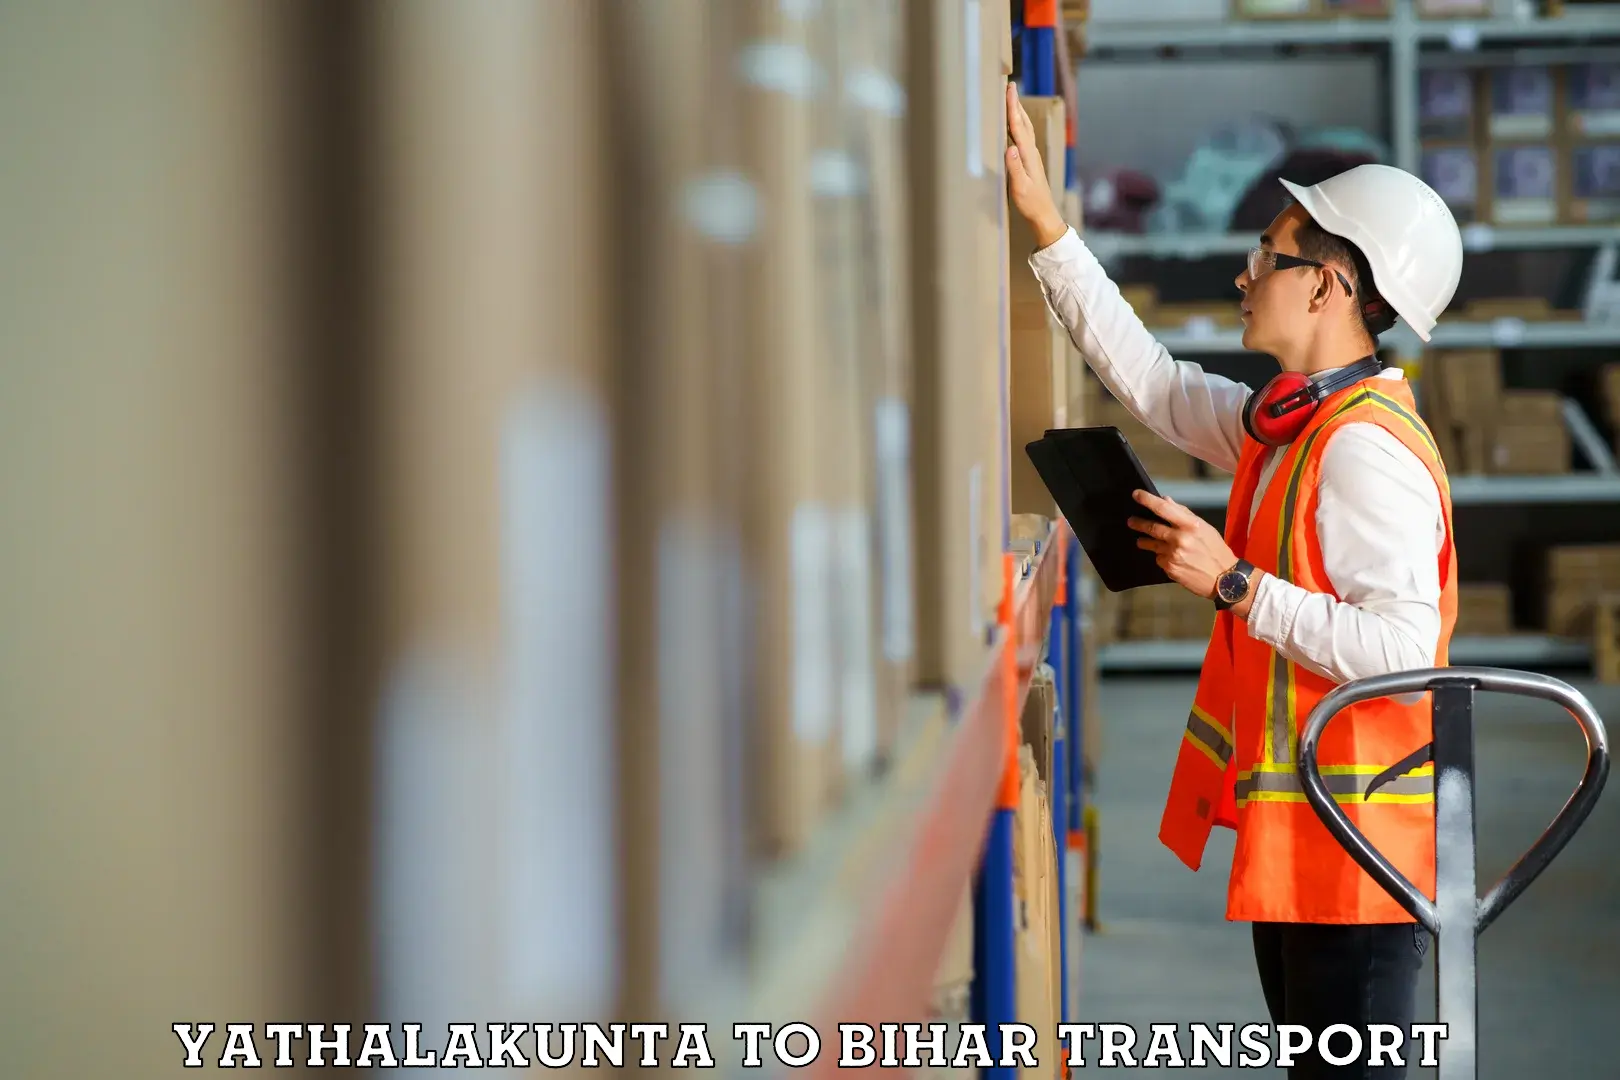 Lorry transport service Yathalakunta to Bihar